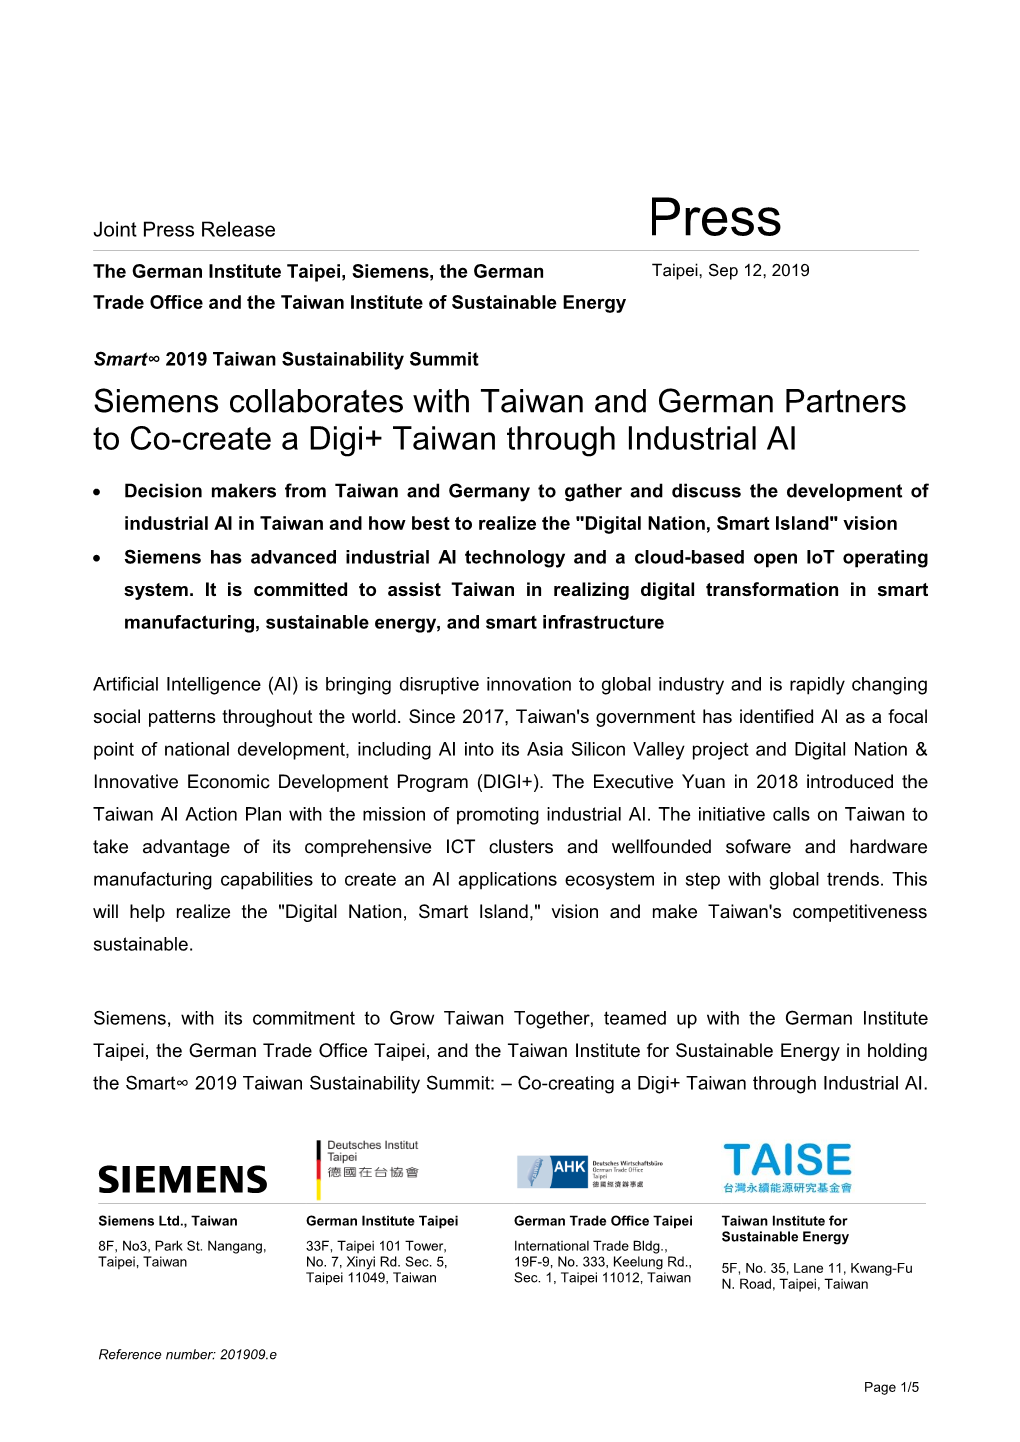 Siemens Press Release